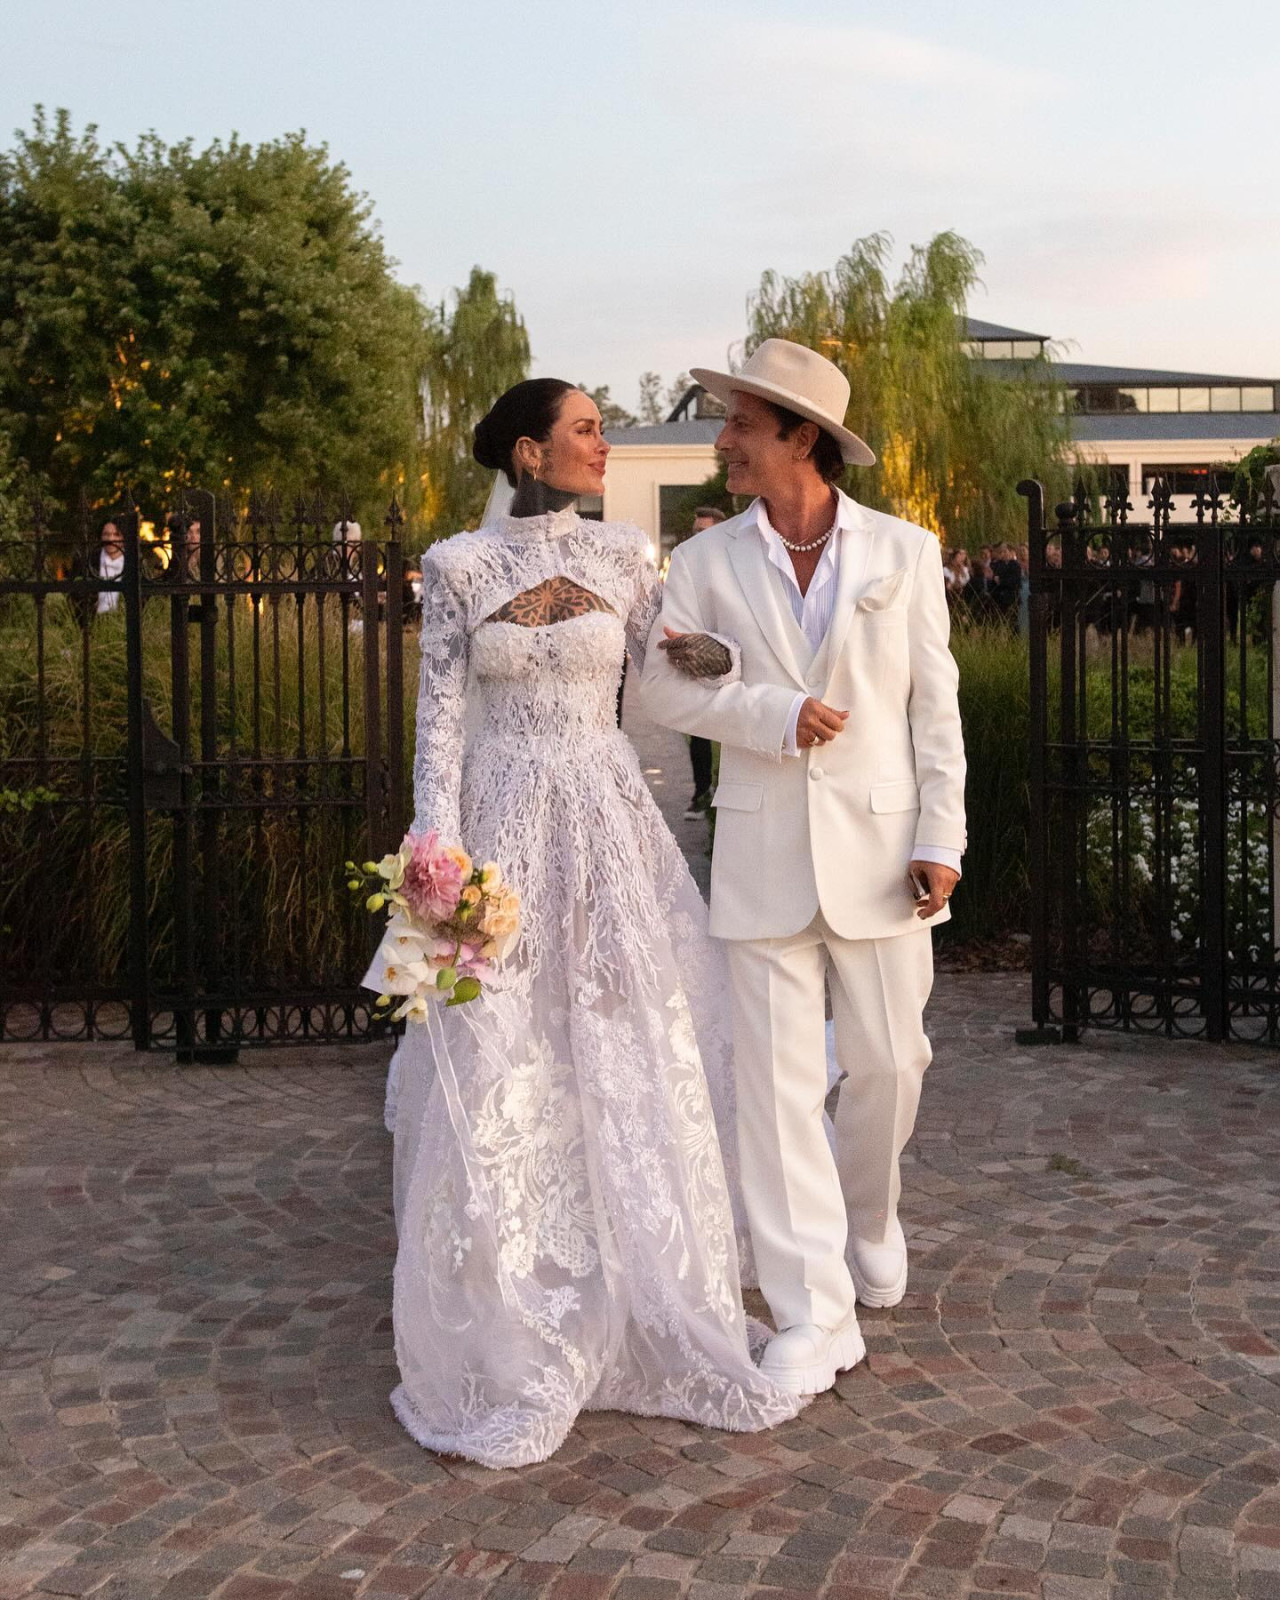 Casamiento de Cande Tinelli y Coti Sorokin. Foto: Instagram.